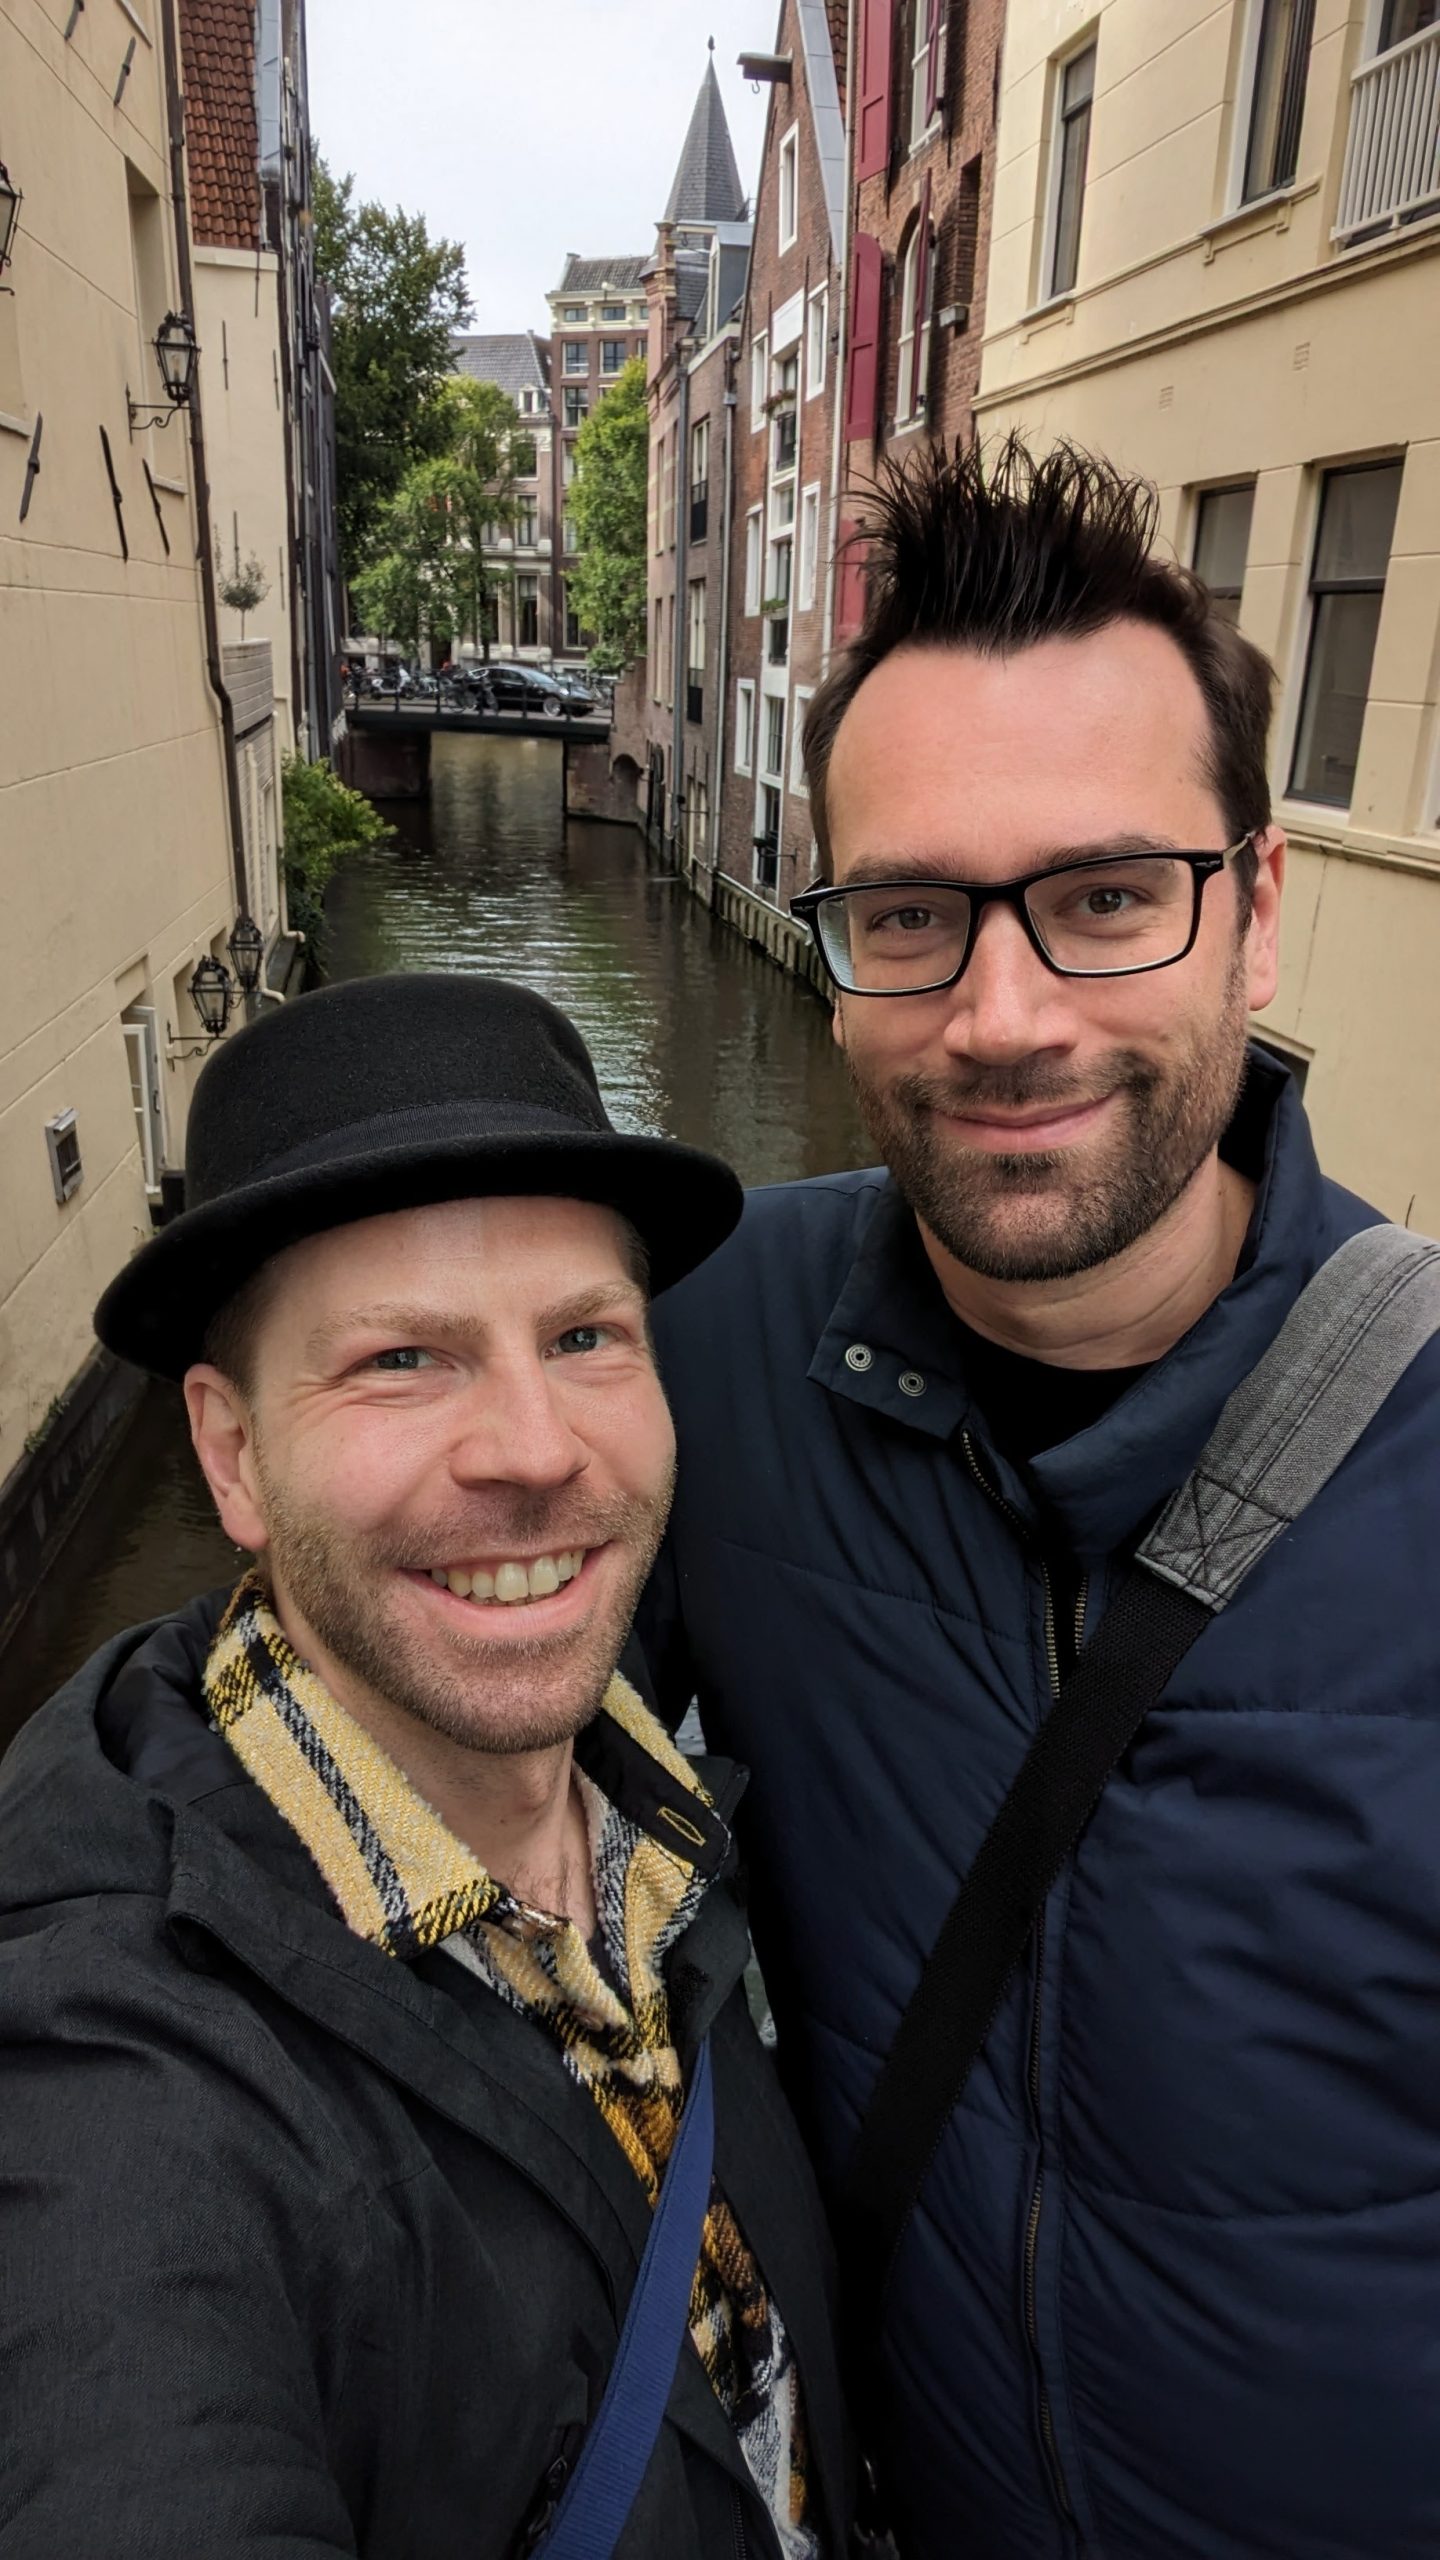 Toni und Sebi von Ausgang Podcast lächeln in die Kamera. Sie stehen vor einem der vielen Seitenarme eines Kanals in Amsterdam, die Sonne scheint.